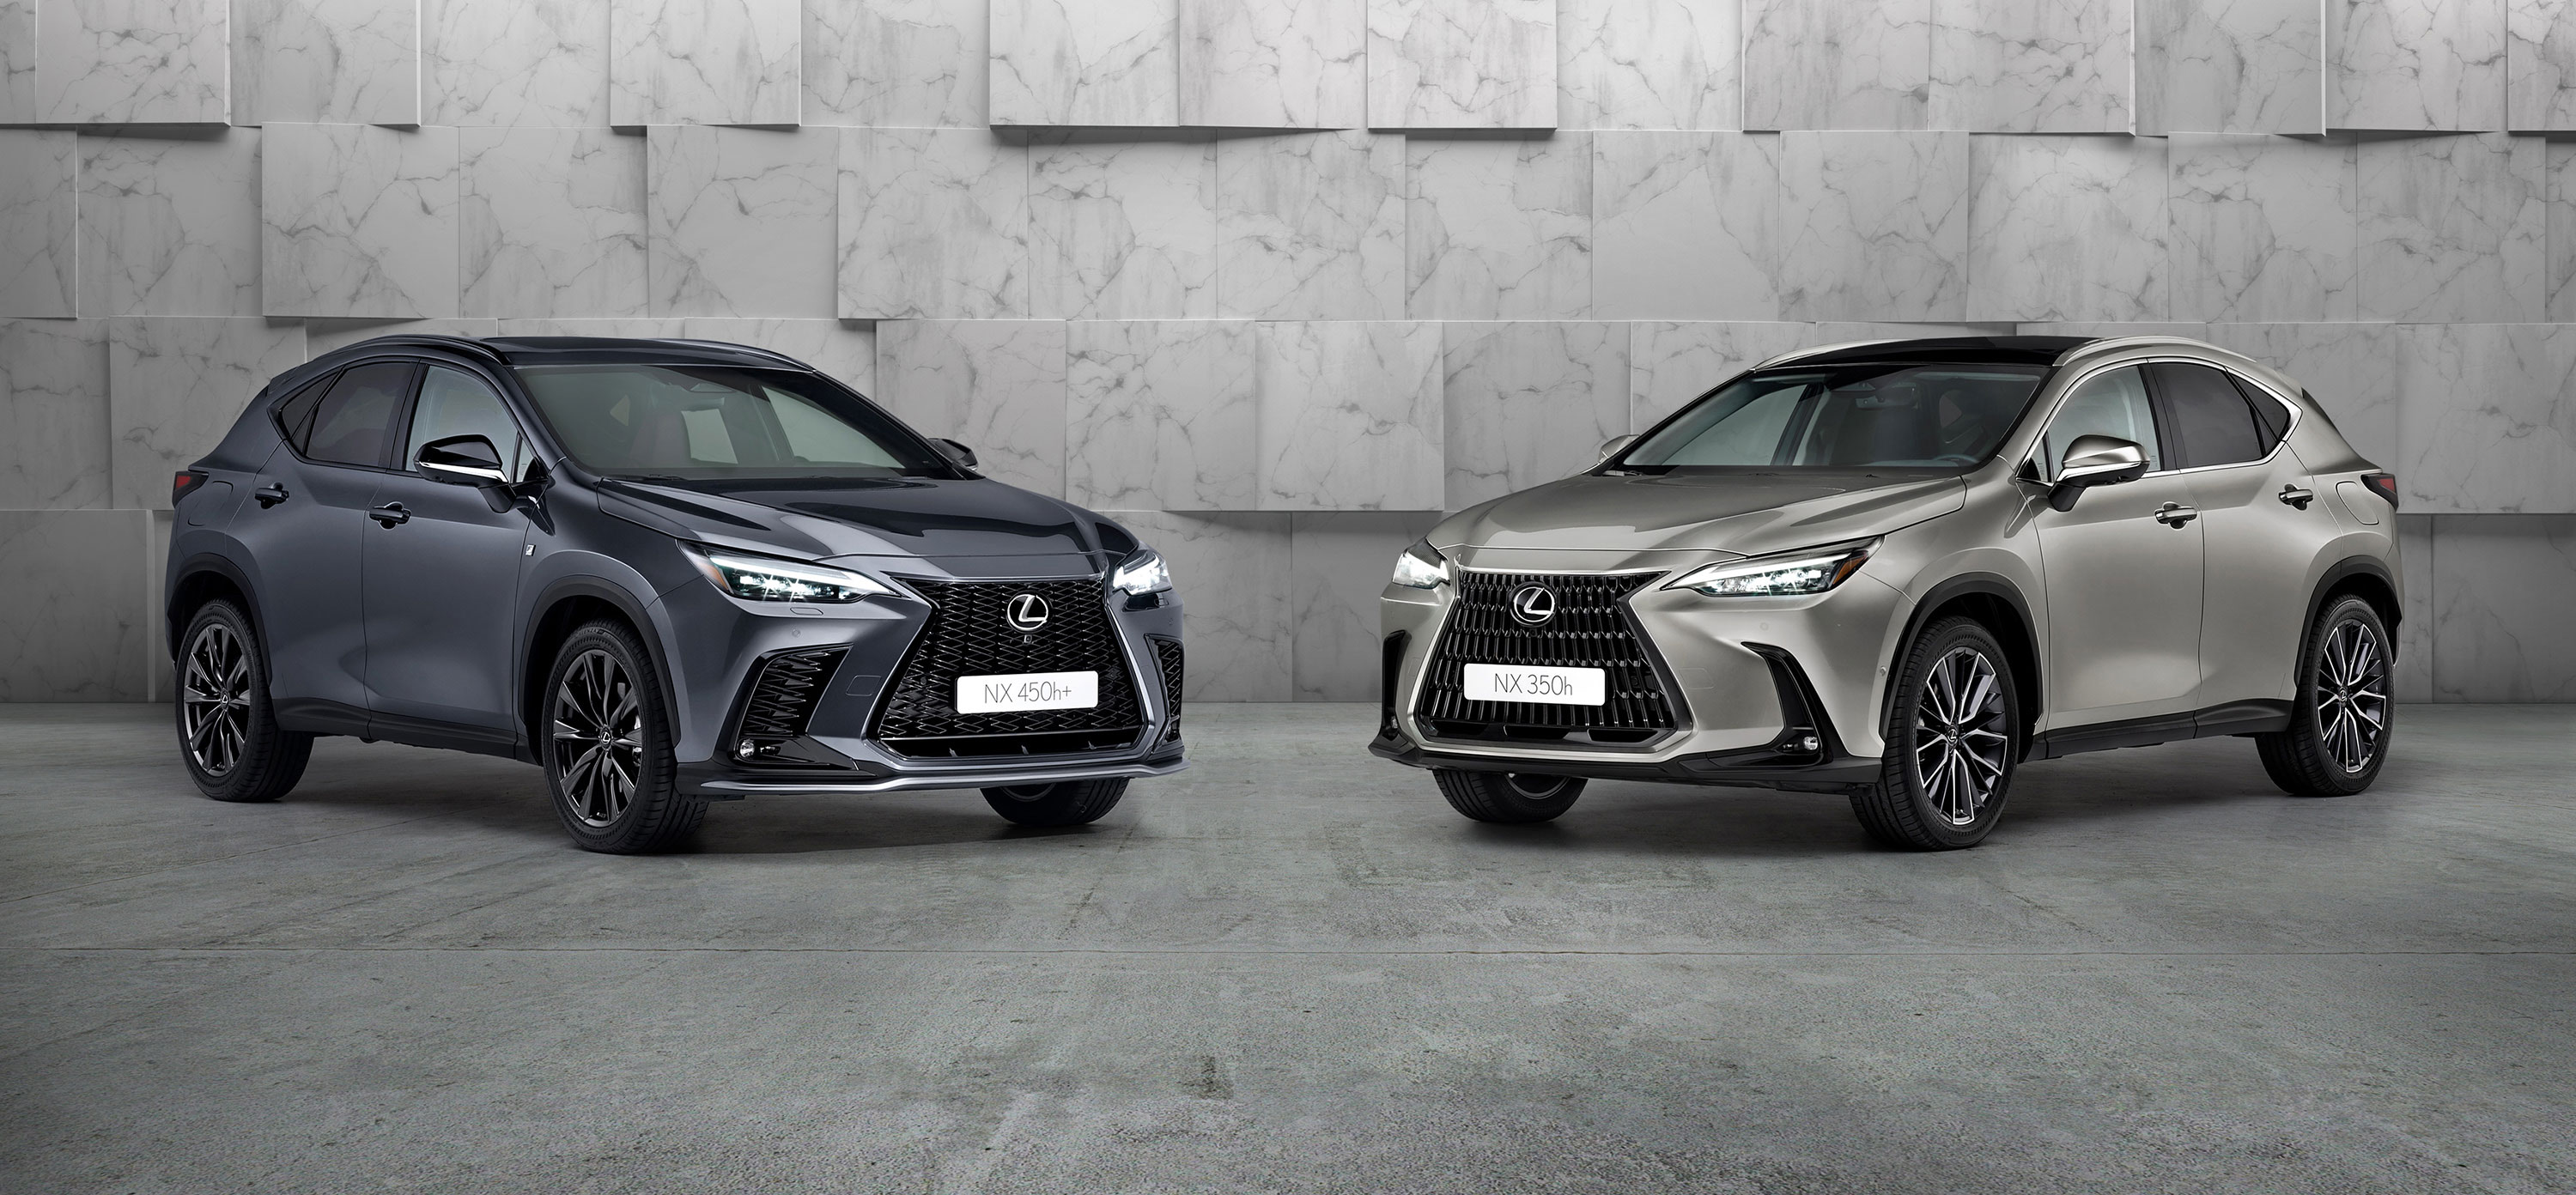 Galería: Lexus presentará en el Salón de Barcelona 2 novedades: Los Lexus NX 350h y NX 450h+, y el nuevo Lexus ES 300h